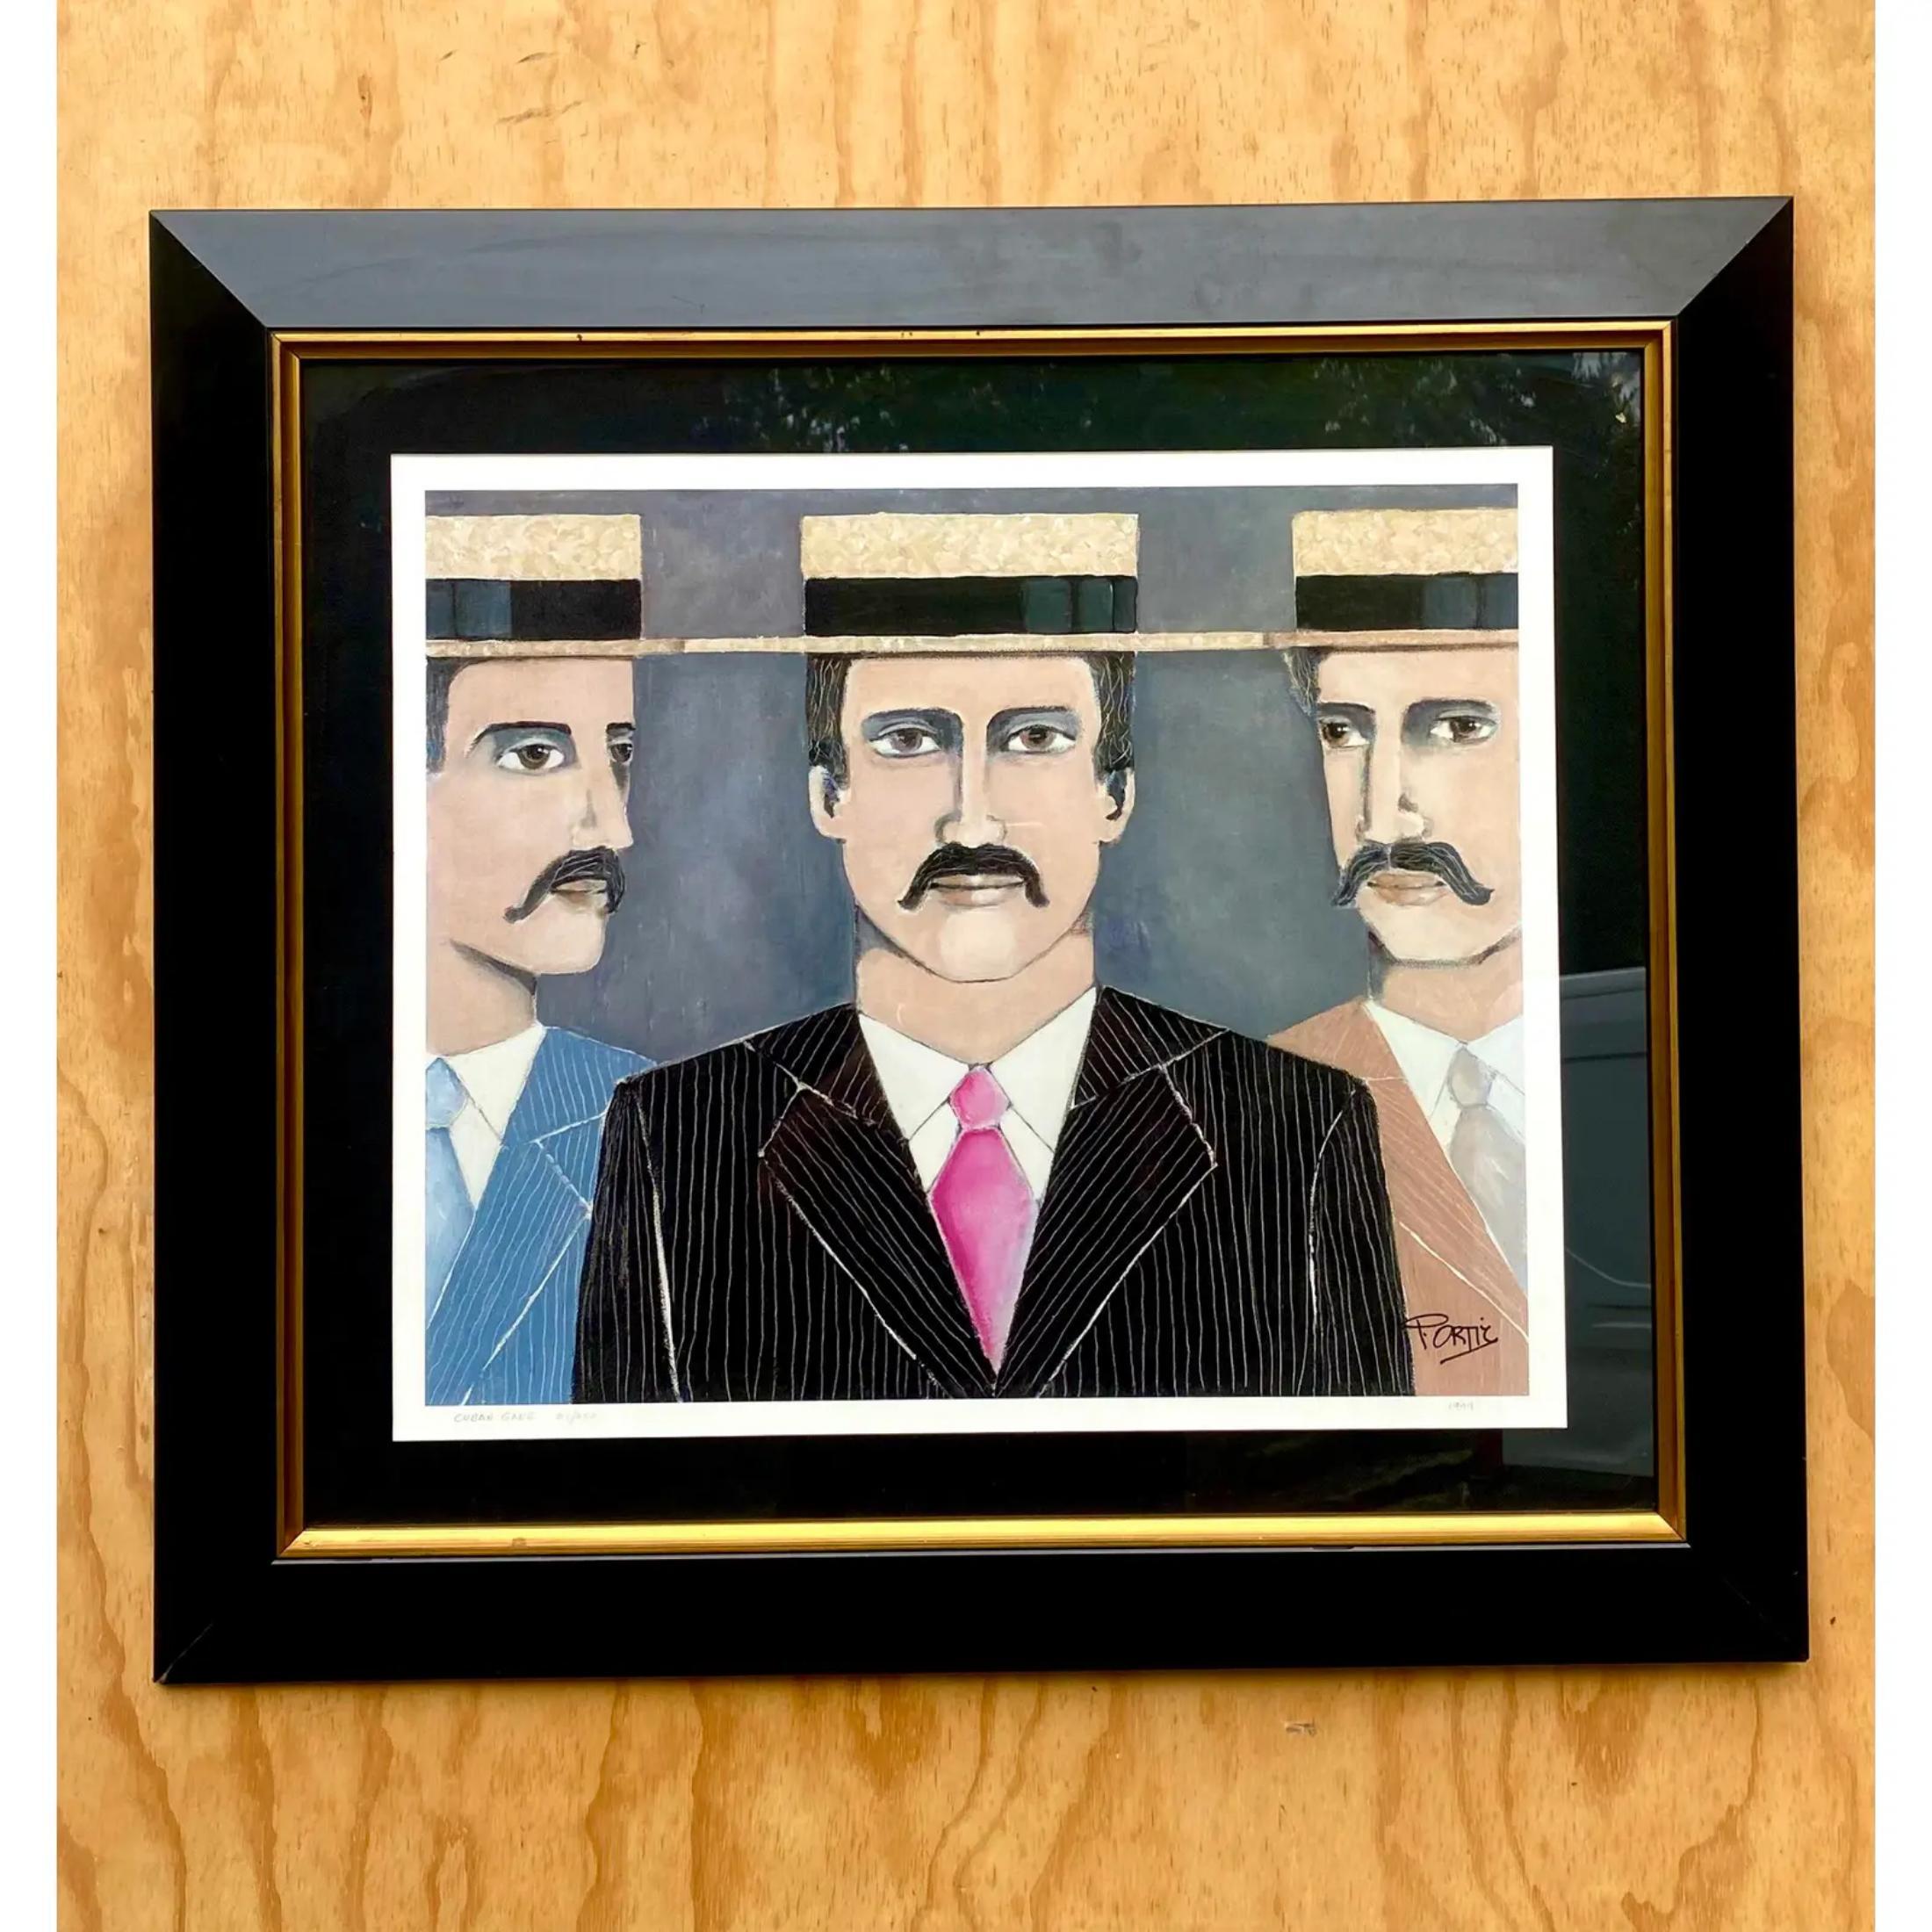 Fabelhafte Vintage-Lithographie. Signiert vom Künstler Pedro Ortiz. Drei gut aussehende Herren mit Schnurrbärten. Der Titel des Werks lautet 